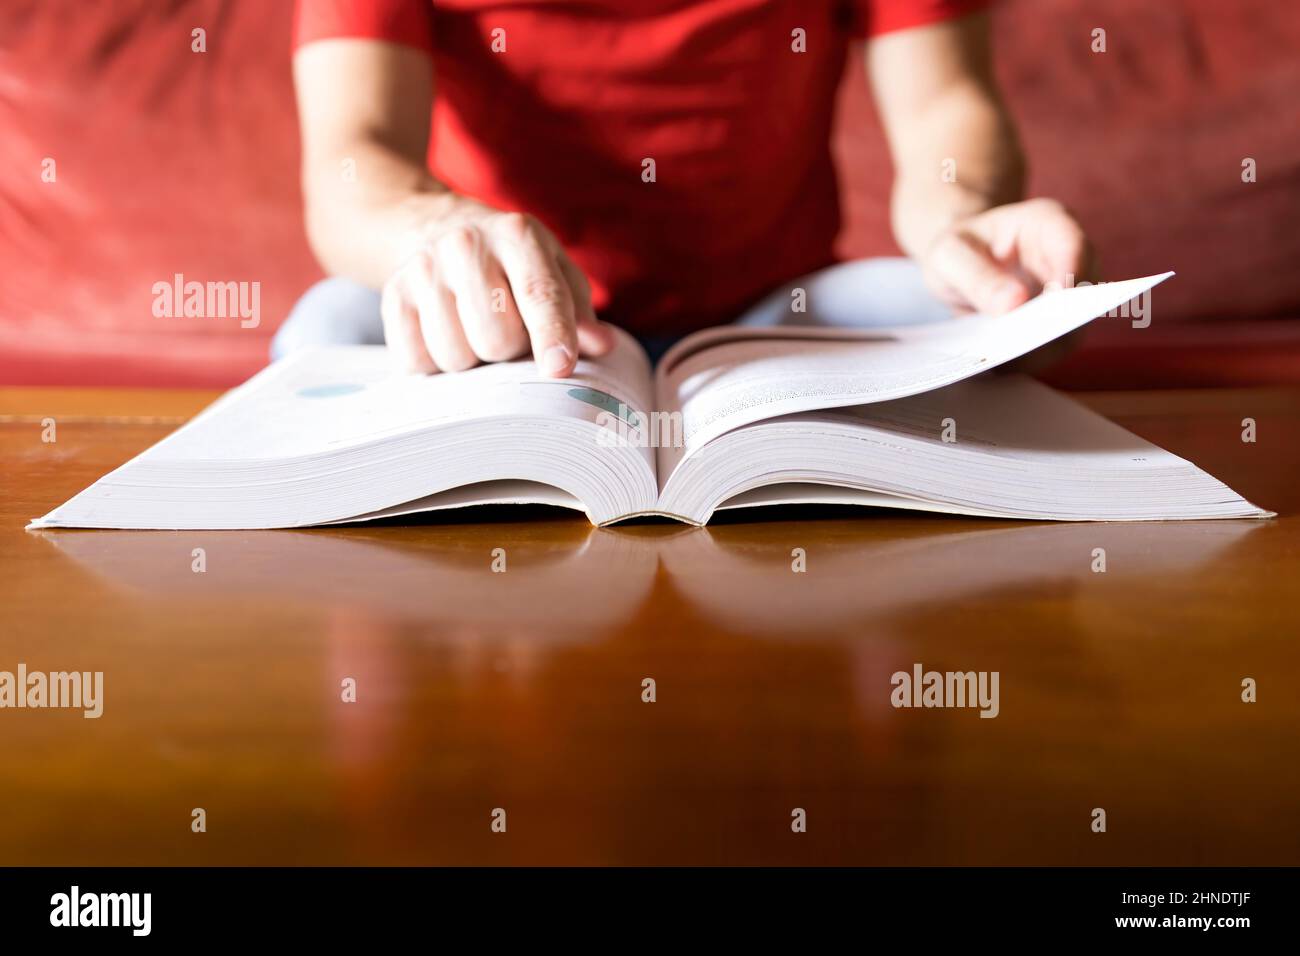 Eine Person in einem roten Hemd konsultiert die Lösung in einem Buch und findet sie, verschwommener Hintergrund, selektiver Fokus Stockfoto